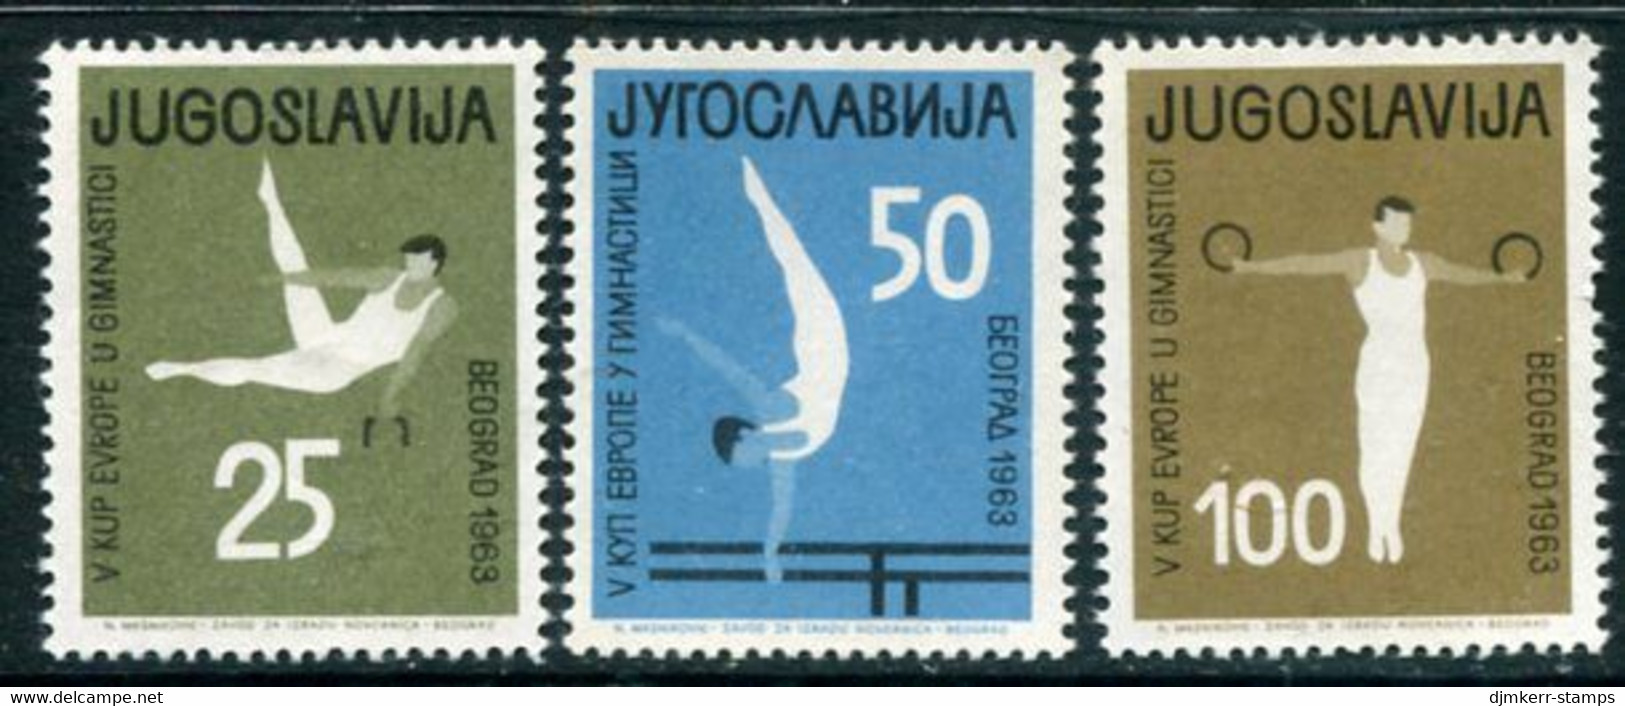 YUGOSLAVIA 1963 European Gymnastics MNH / **.  Michel 1049-51 - Nuevos